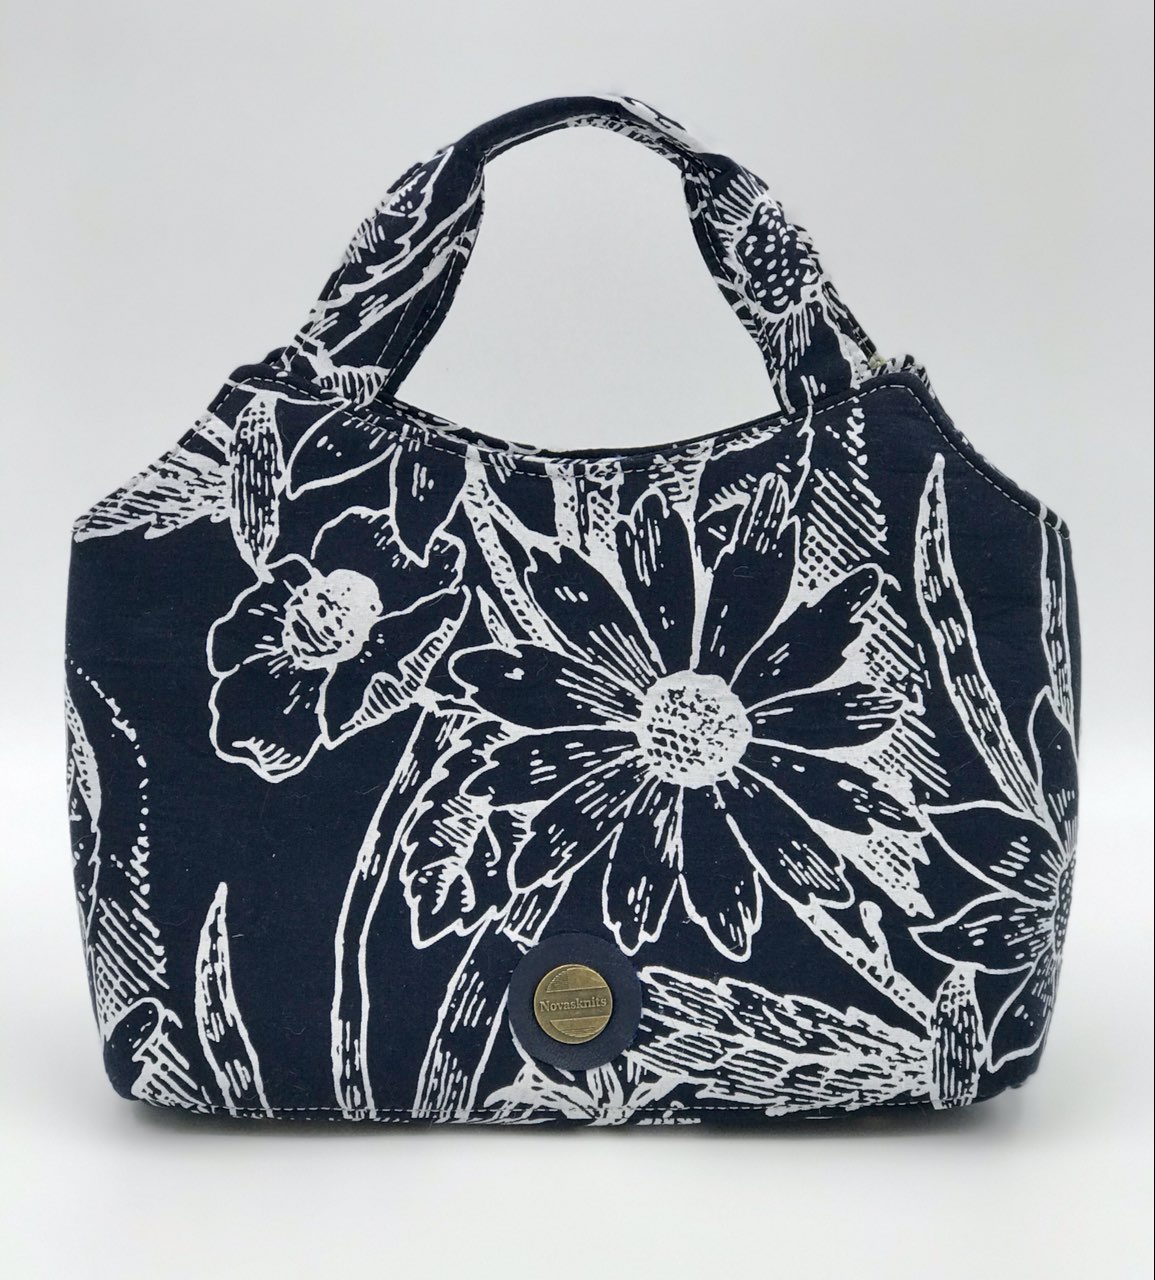 The Hope Handbag from Sewing Patterns by Junyuan 
, made by Chanova Alcala of Nova's Knits